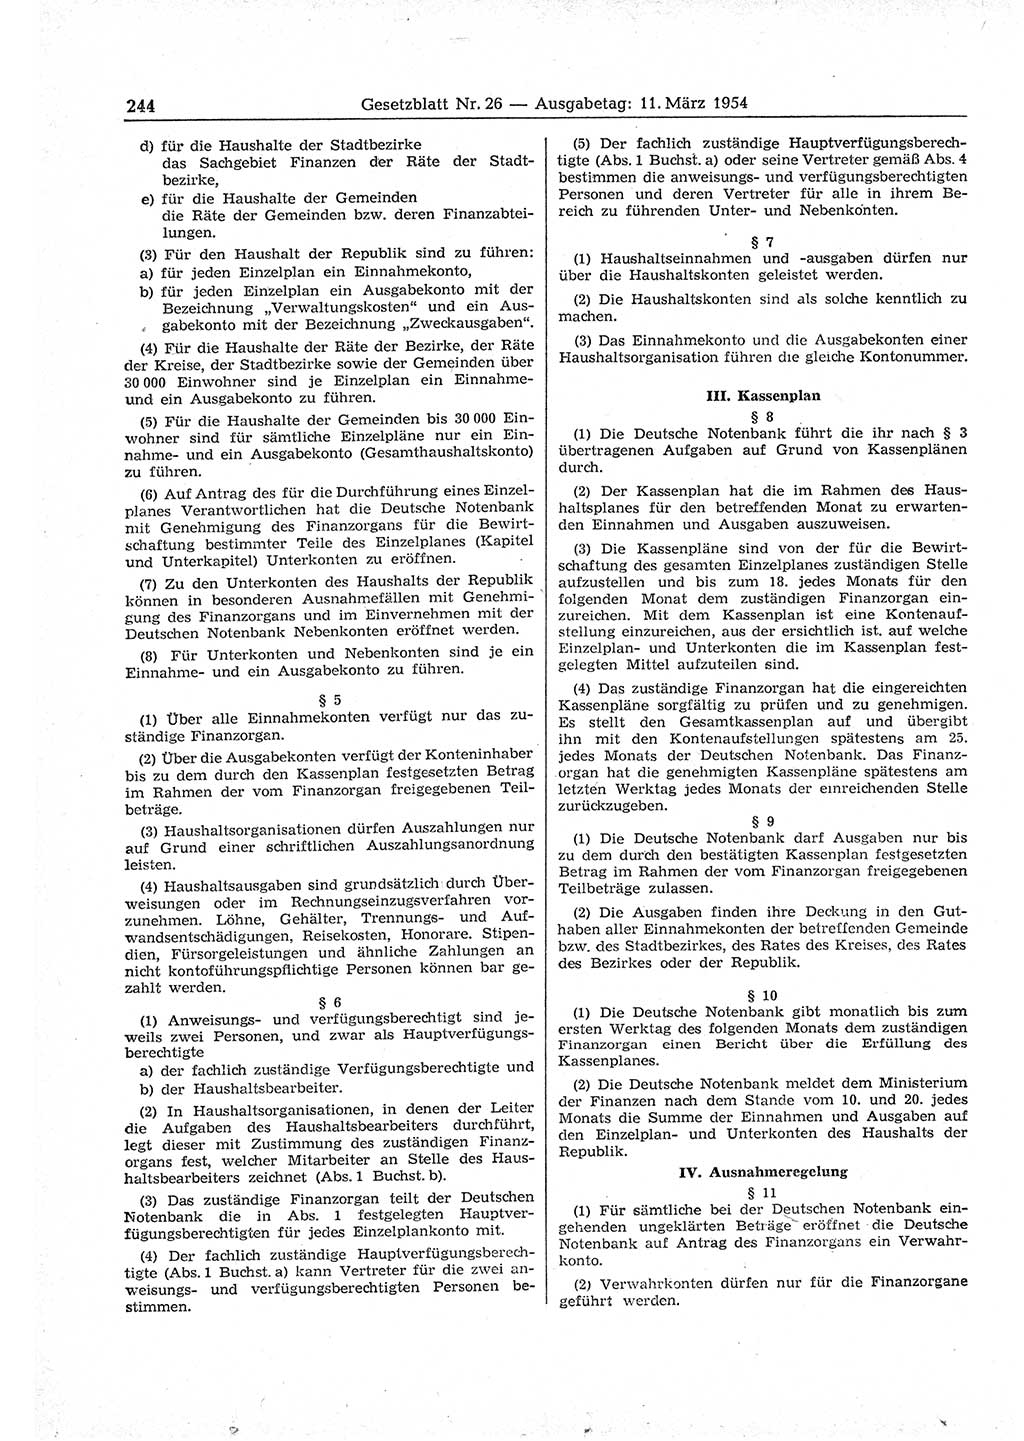 Gesetzblatt (GBl.) der Deutschen Demokratischen Republik (DDR) 1954, Seite 244 (GBl. DDR 1954, S. 244)